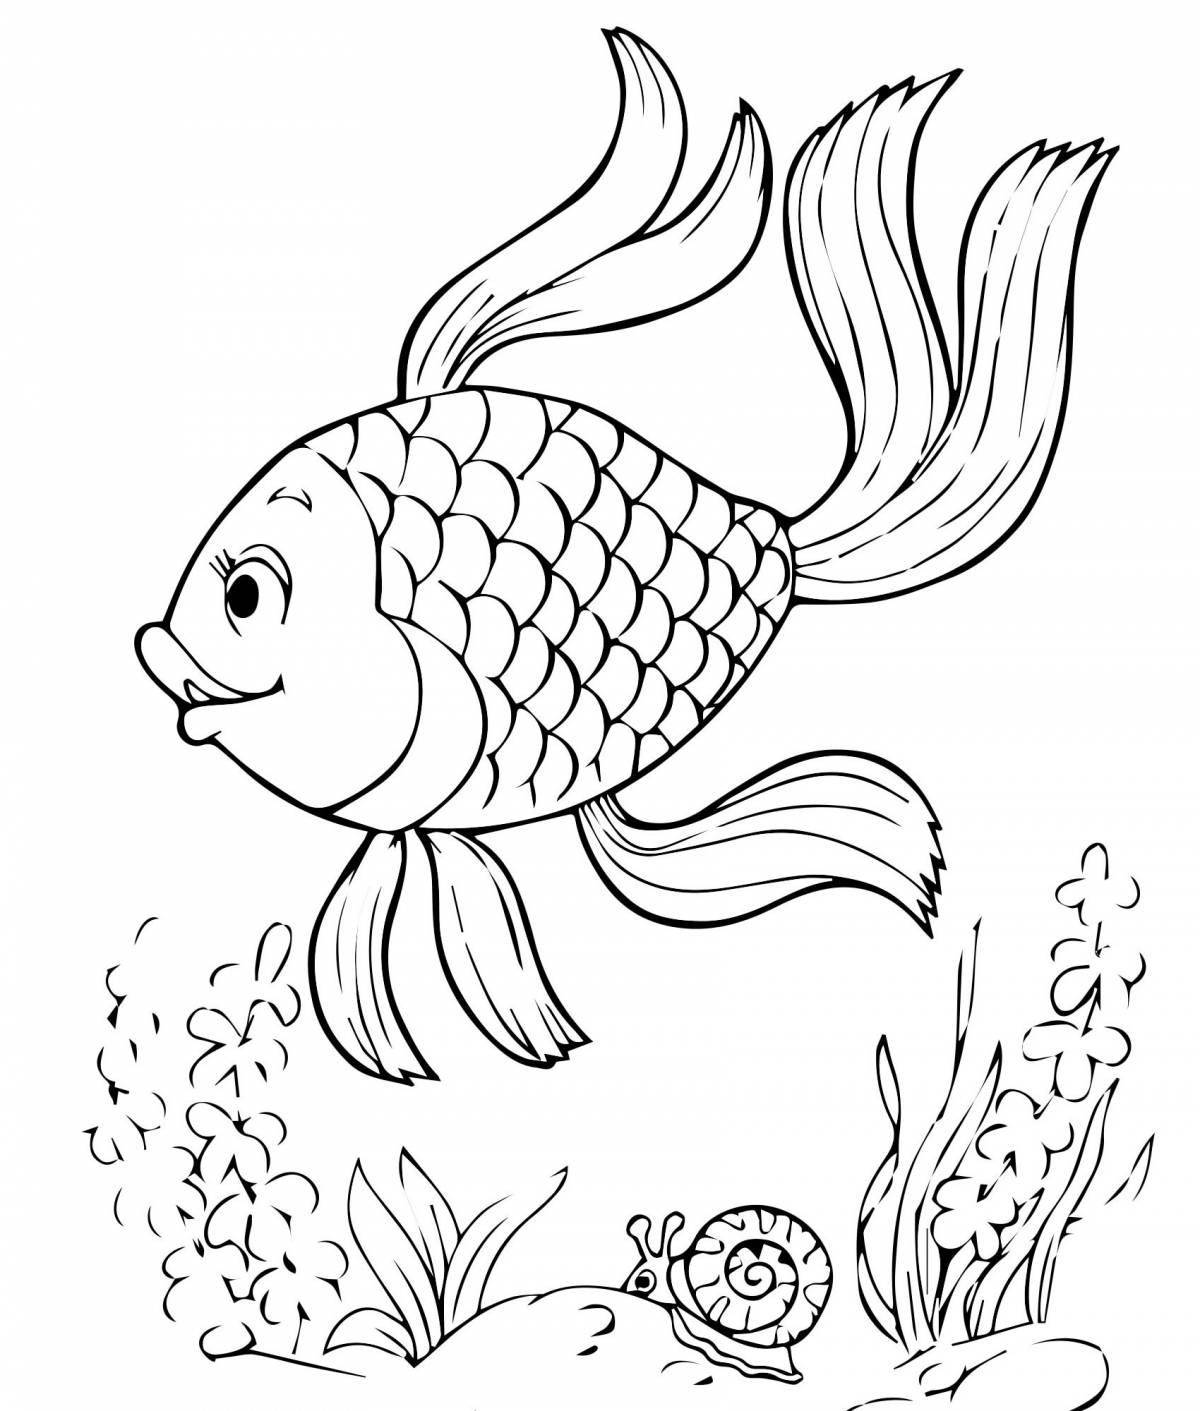 Сложный рисунок золотой рыбки